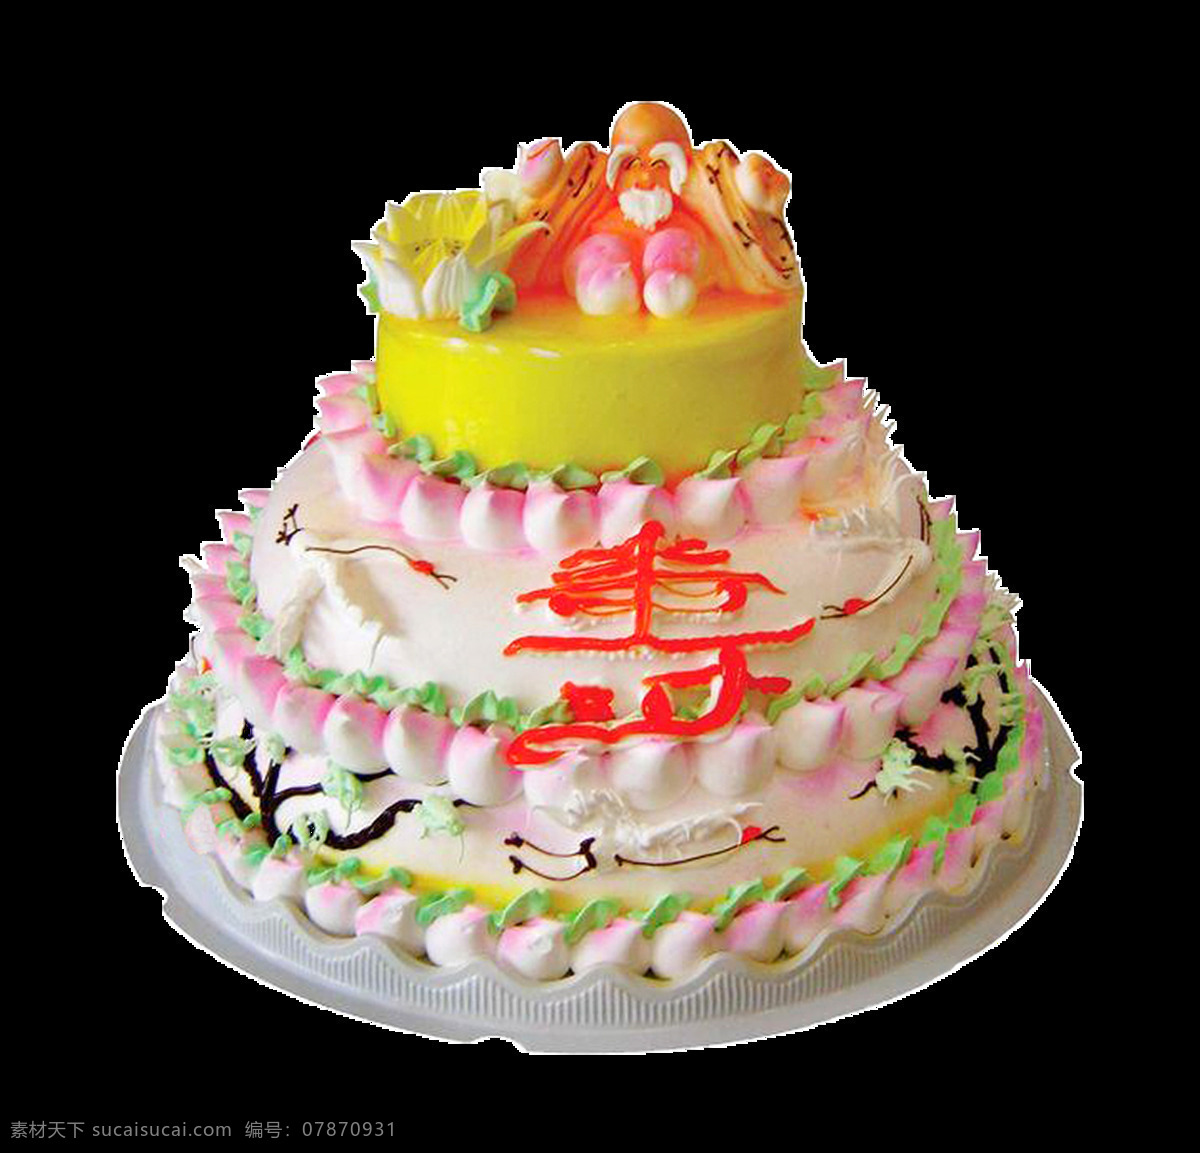 三 层 寿 字 生日蛋糕 花式蛋糕 节日蛋糕 卡通蛋糕 免抠素材 三层蛋糕 寿桃 甜点